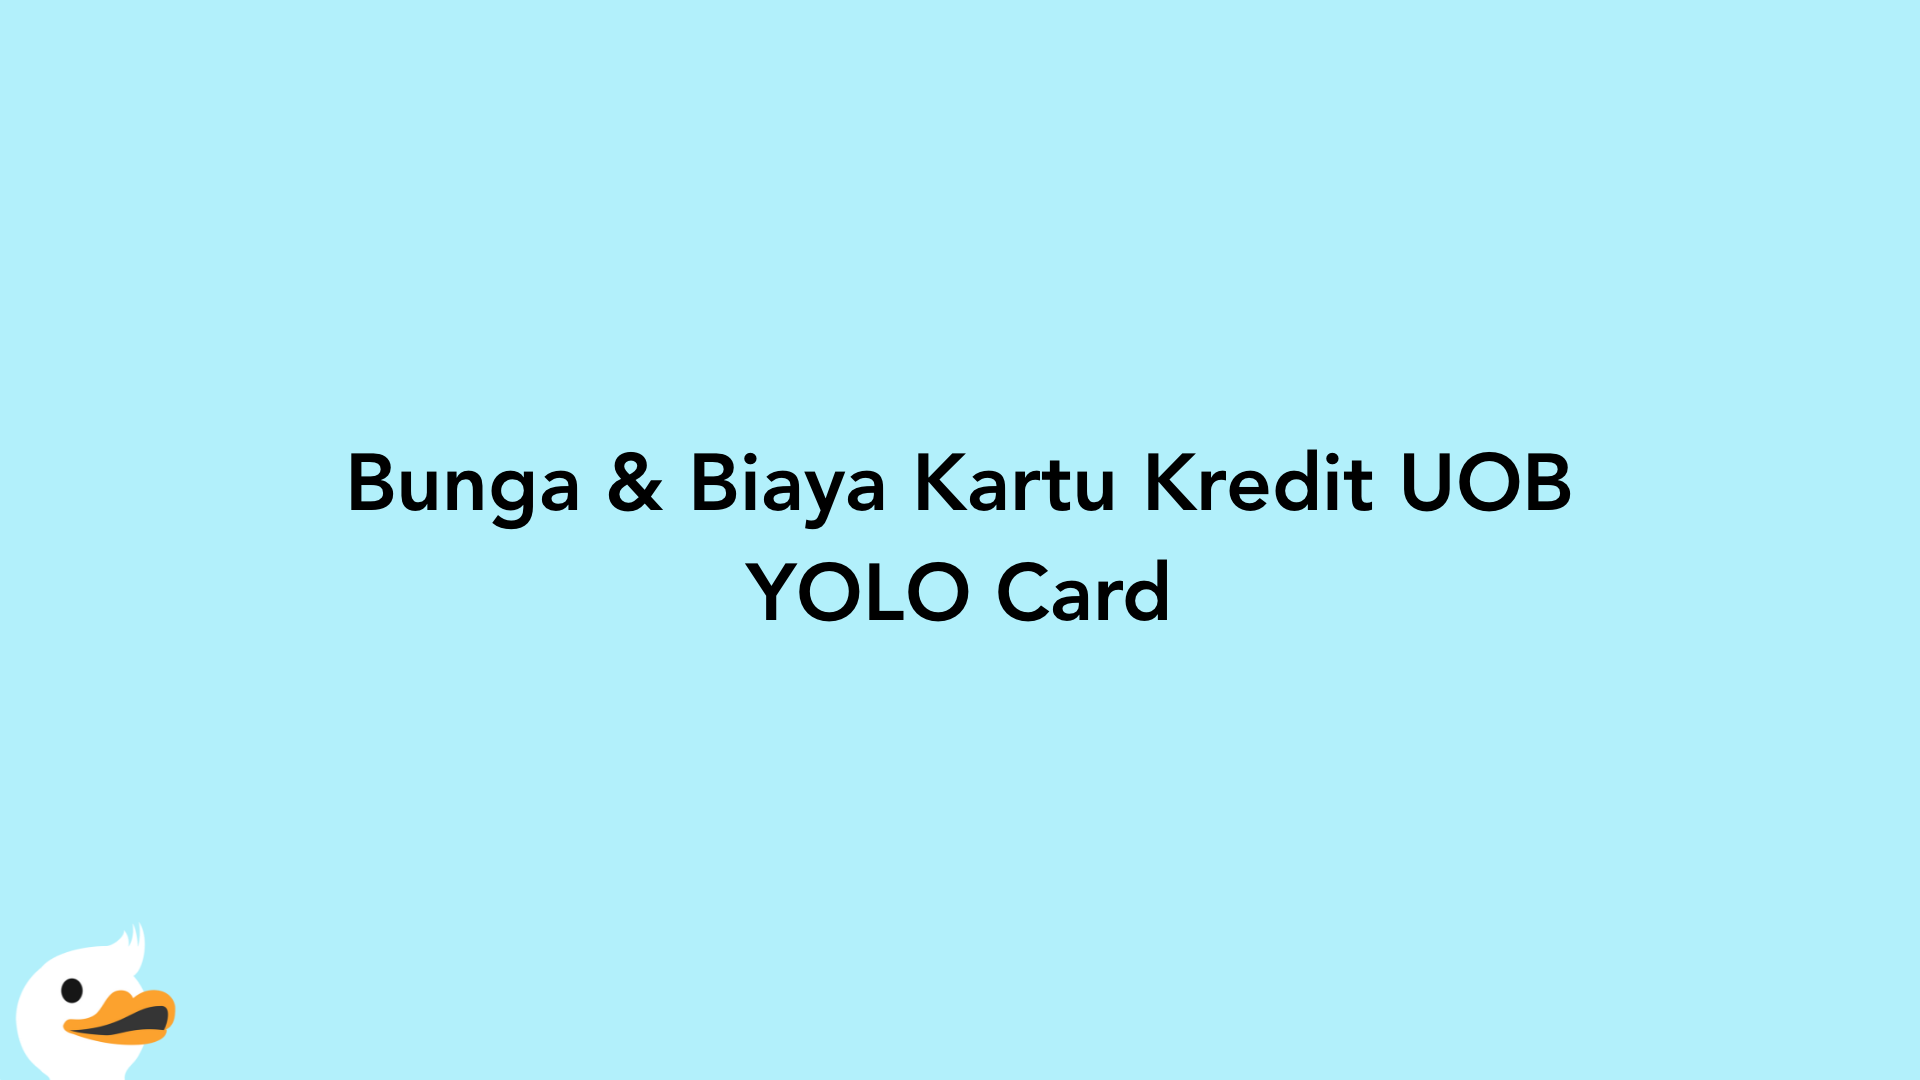 Bunga & Biaya Kartu Kredit UOB YOLO Card